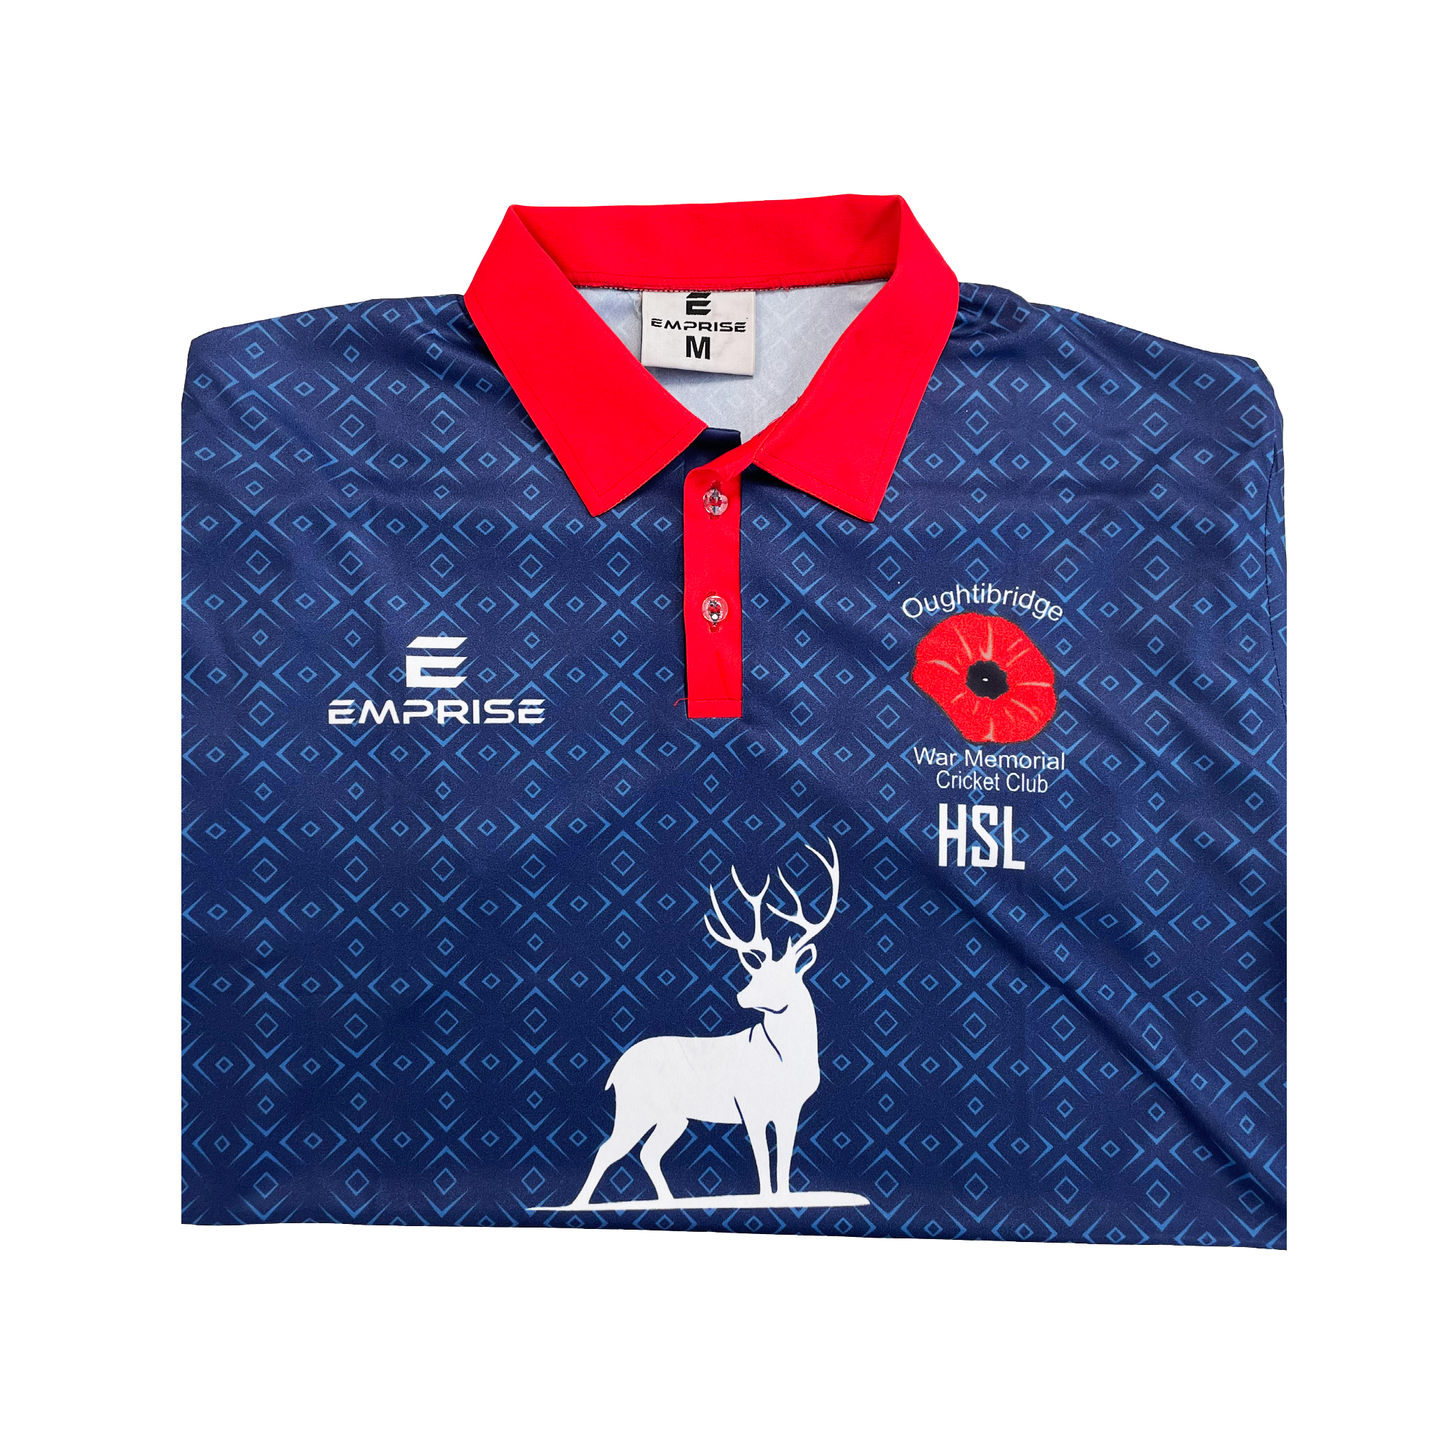 OMWCC T20 Cricket Shirt